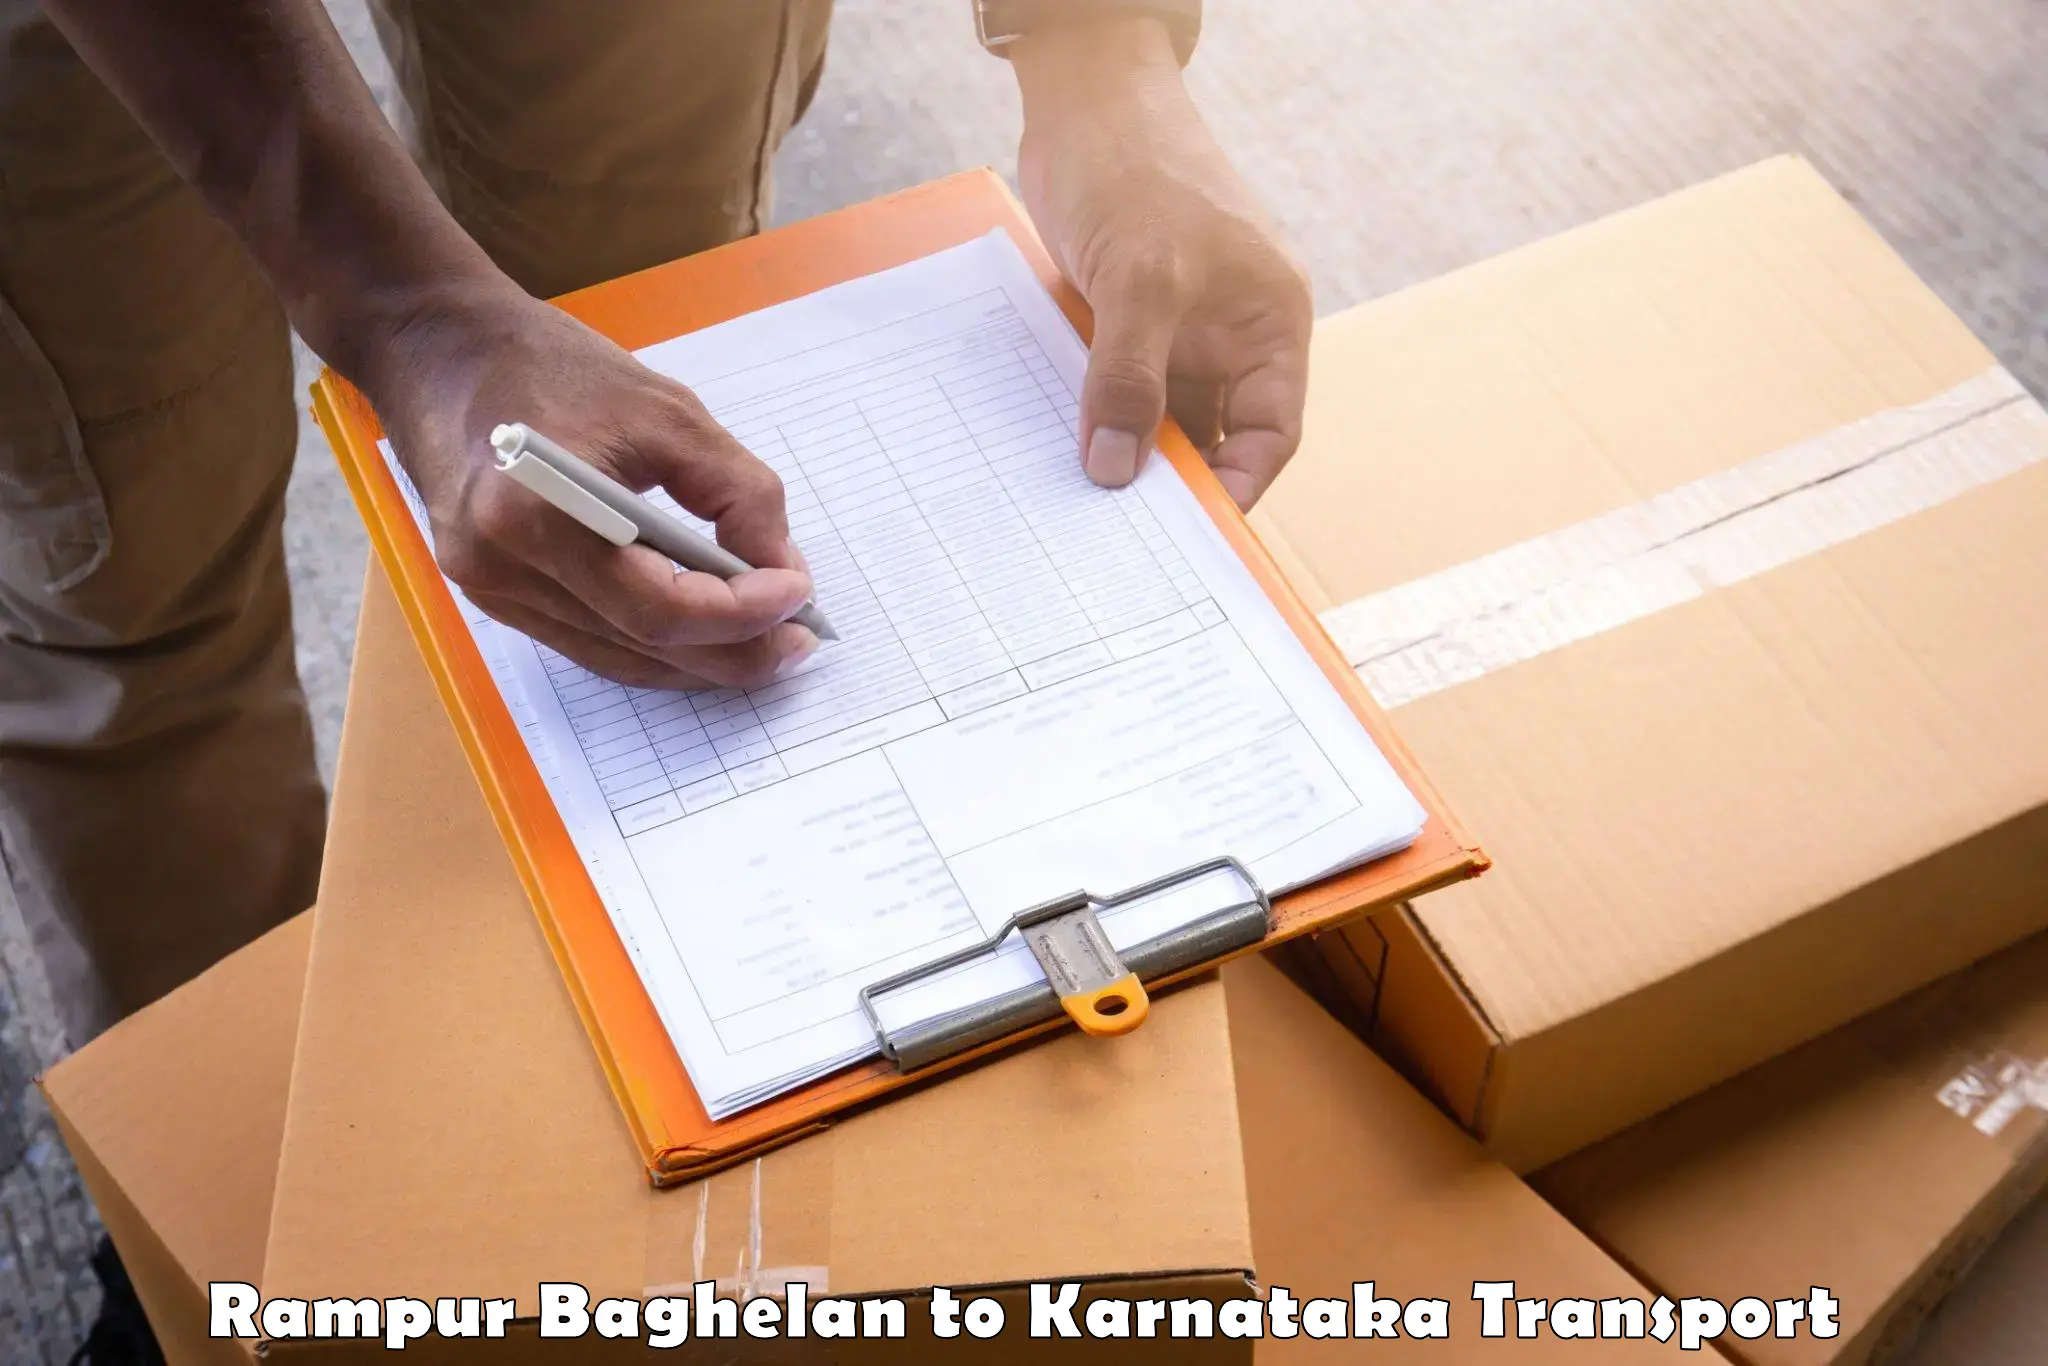 Online transport service Rampur Baghelan to Krishnarajpete